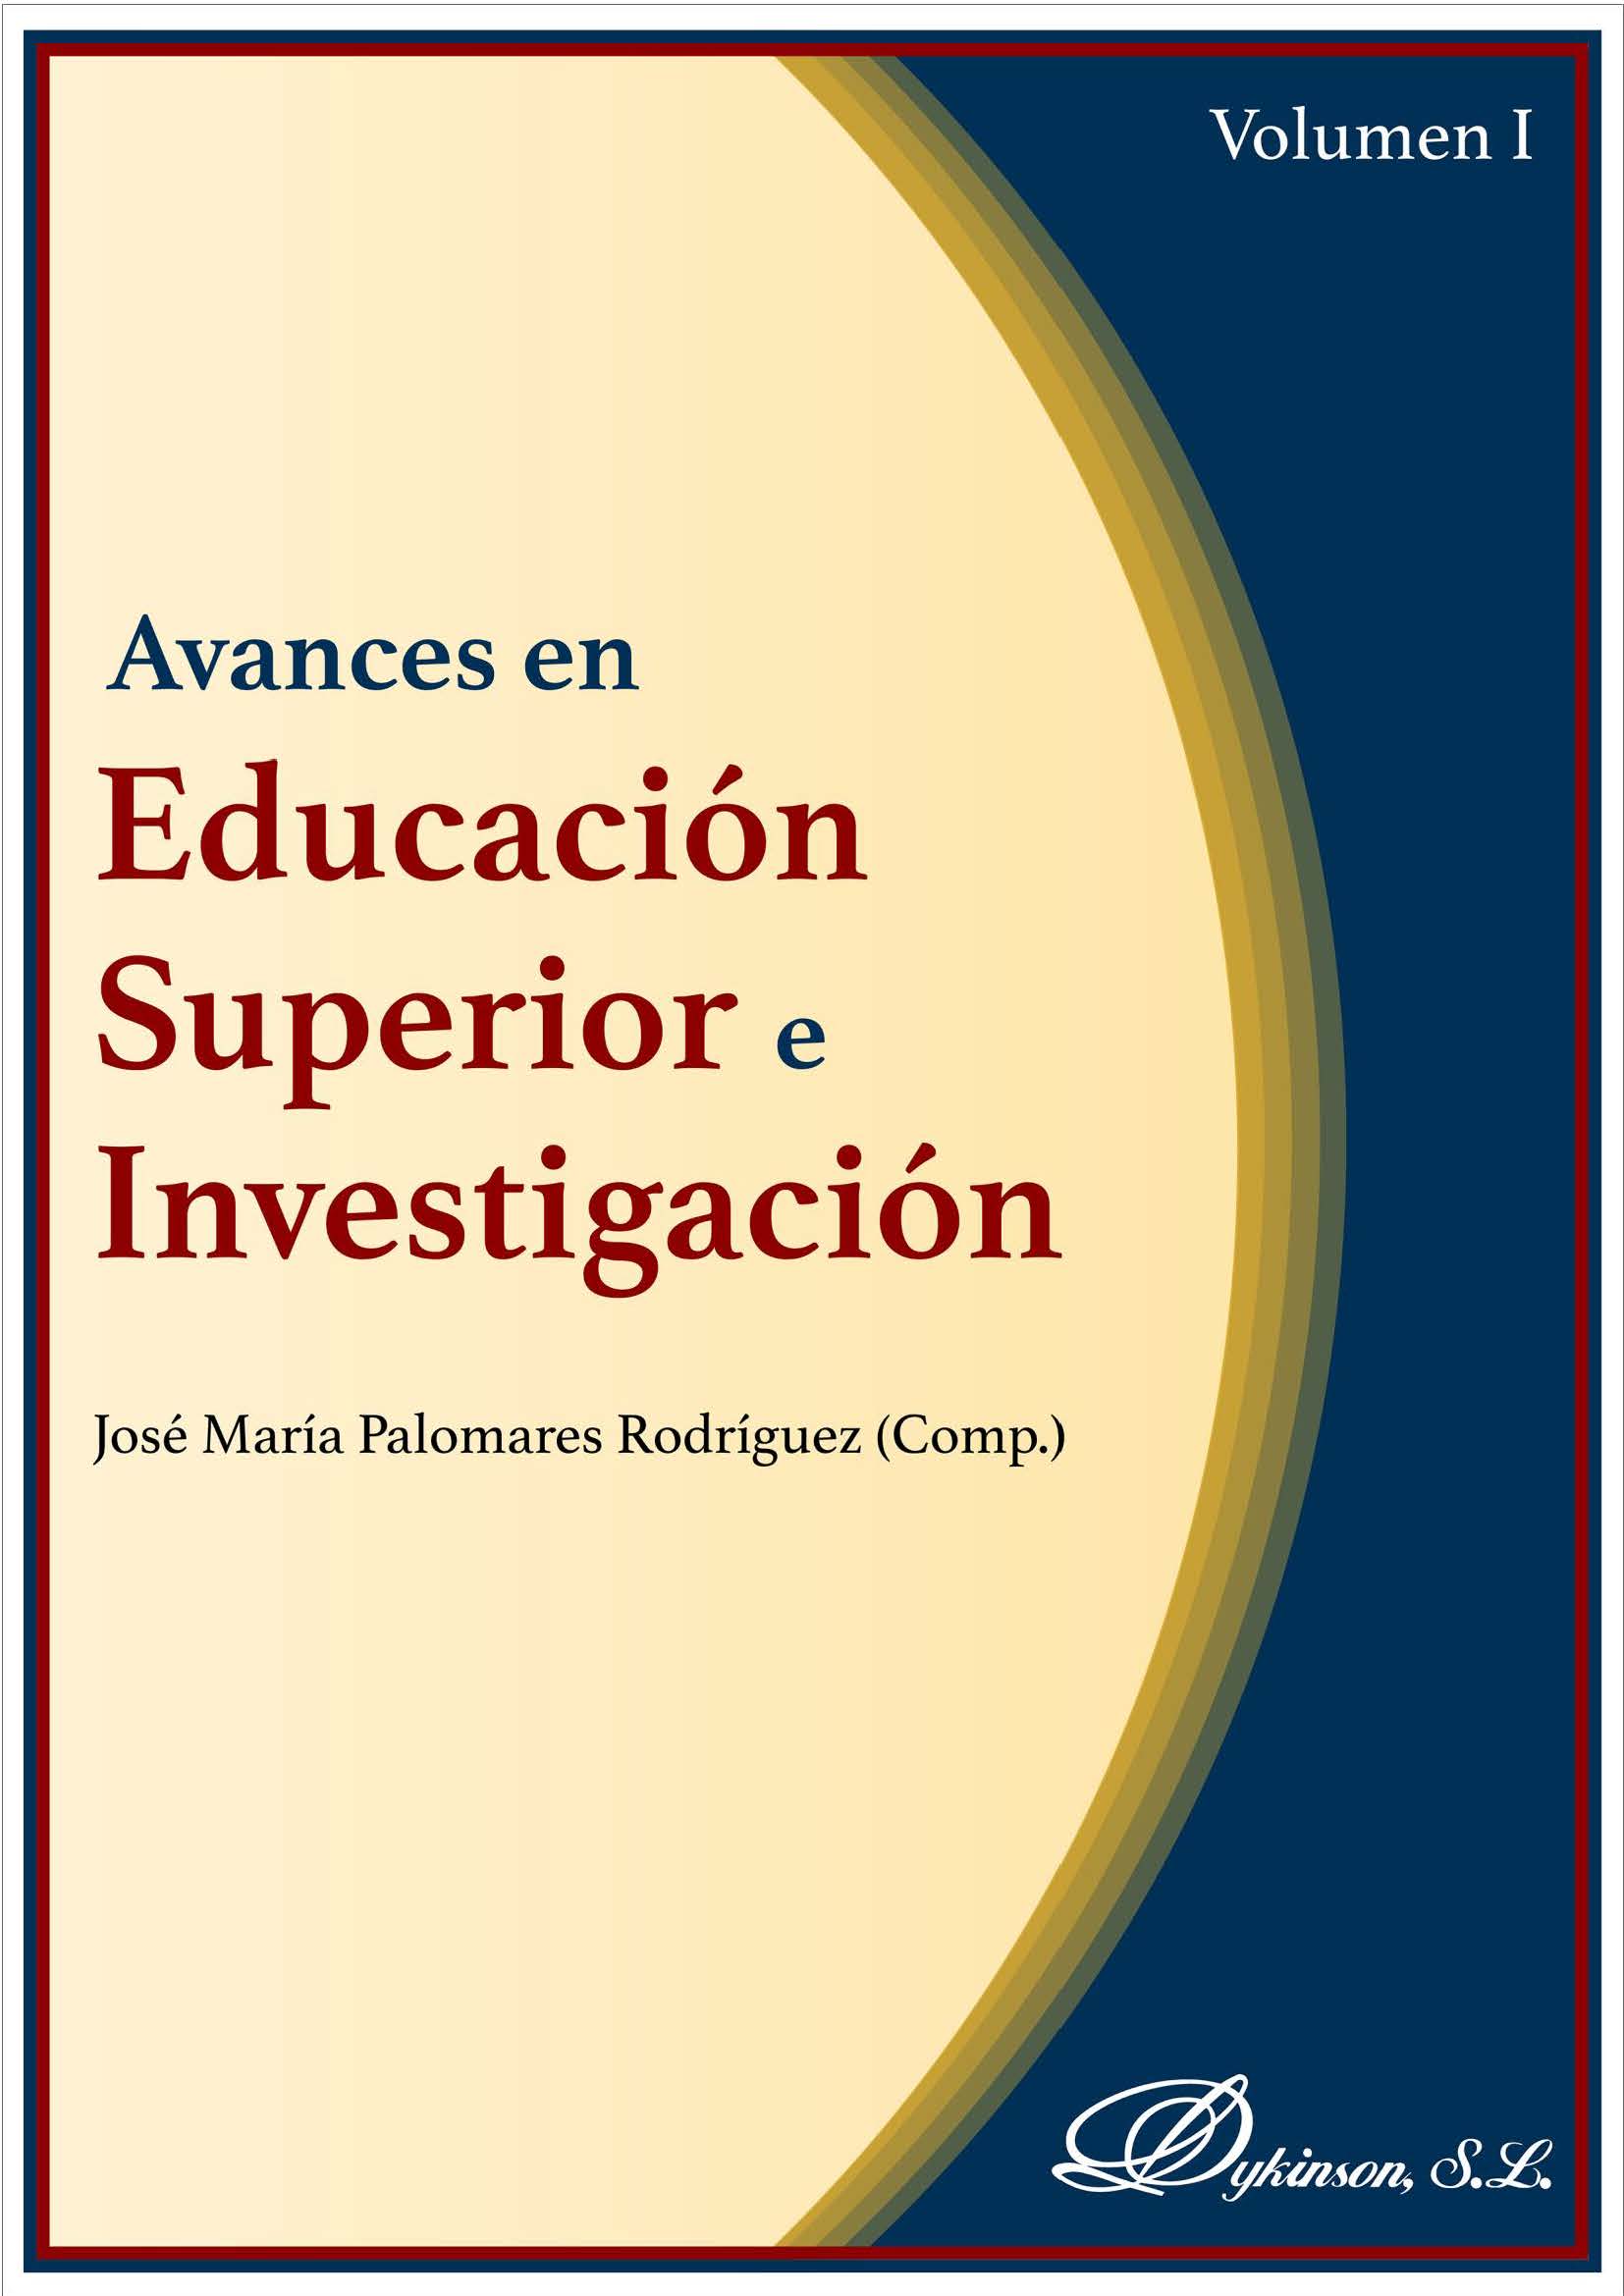 Imagen de portada del libro Avances en educación superior e investigación